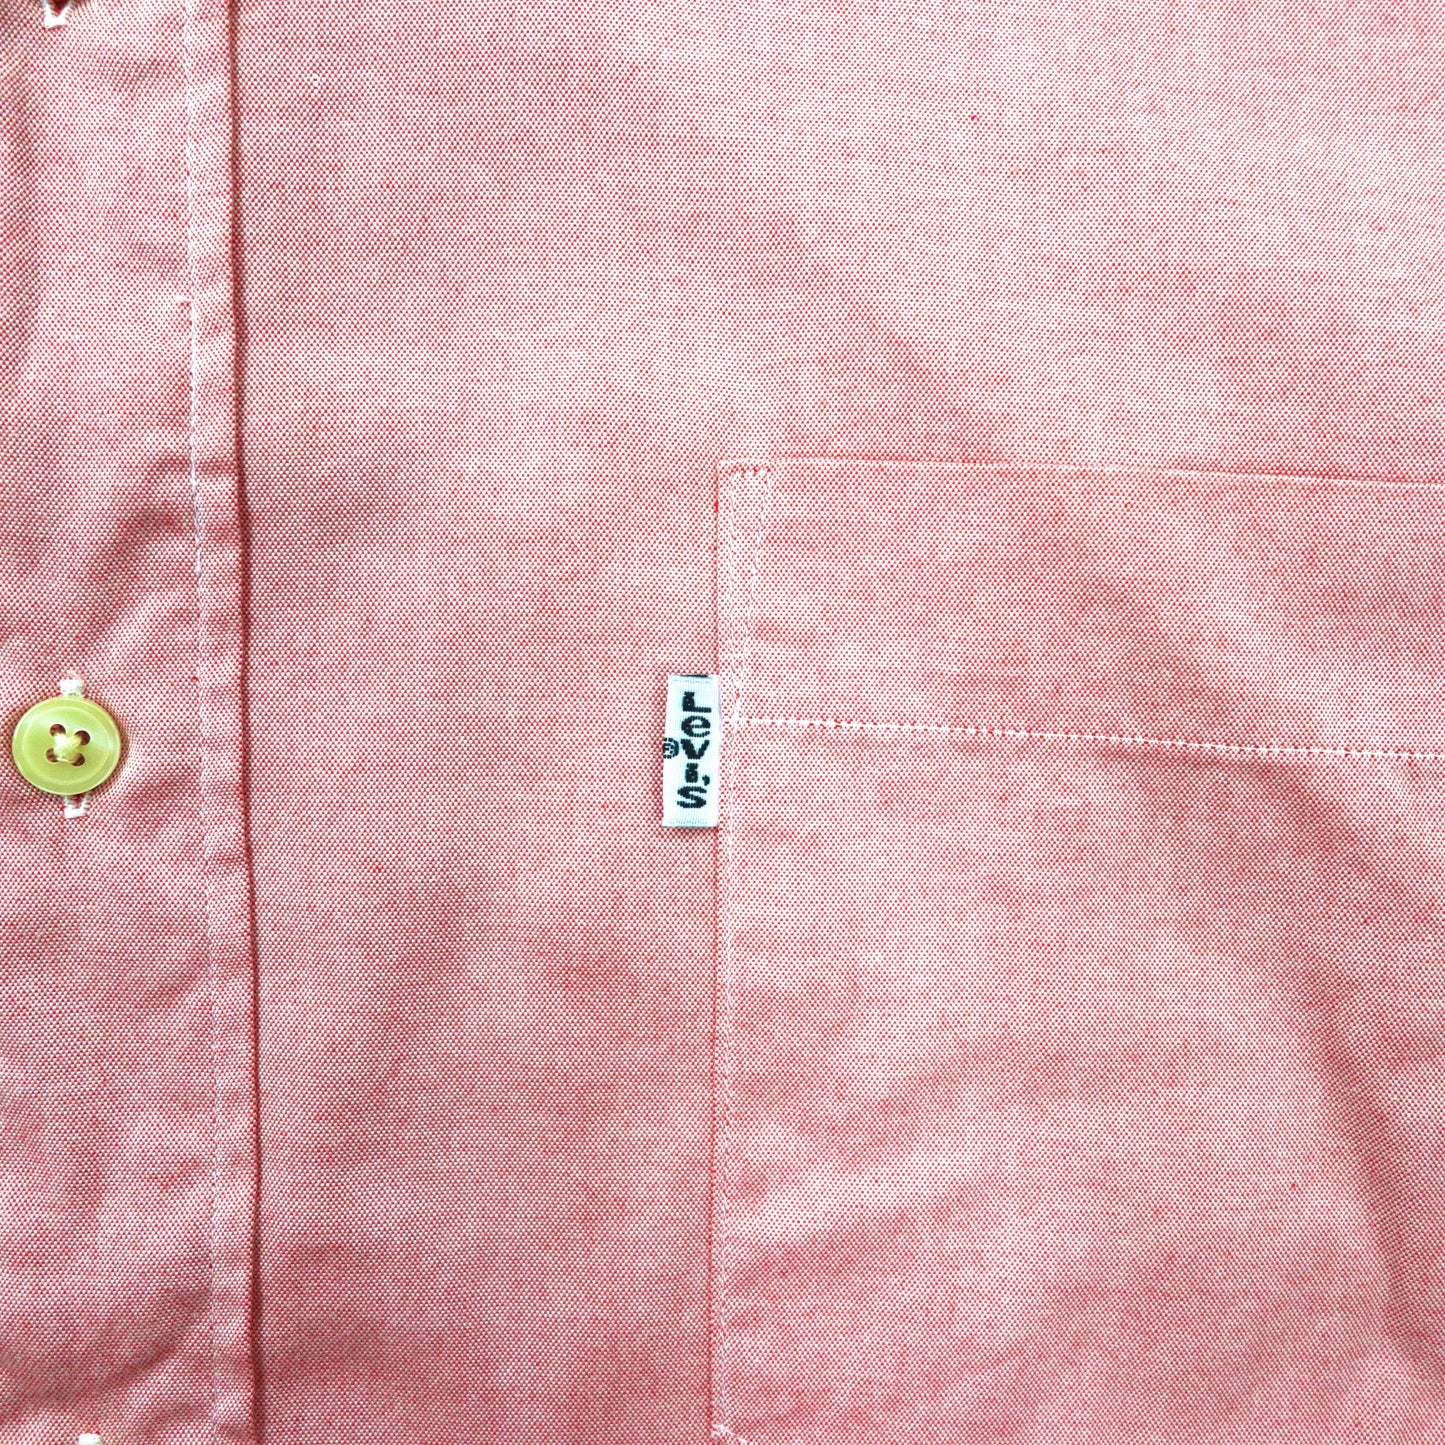 Levi's 半袖ボタンダウンシャツ M ピンク コットン 90年代